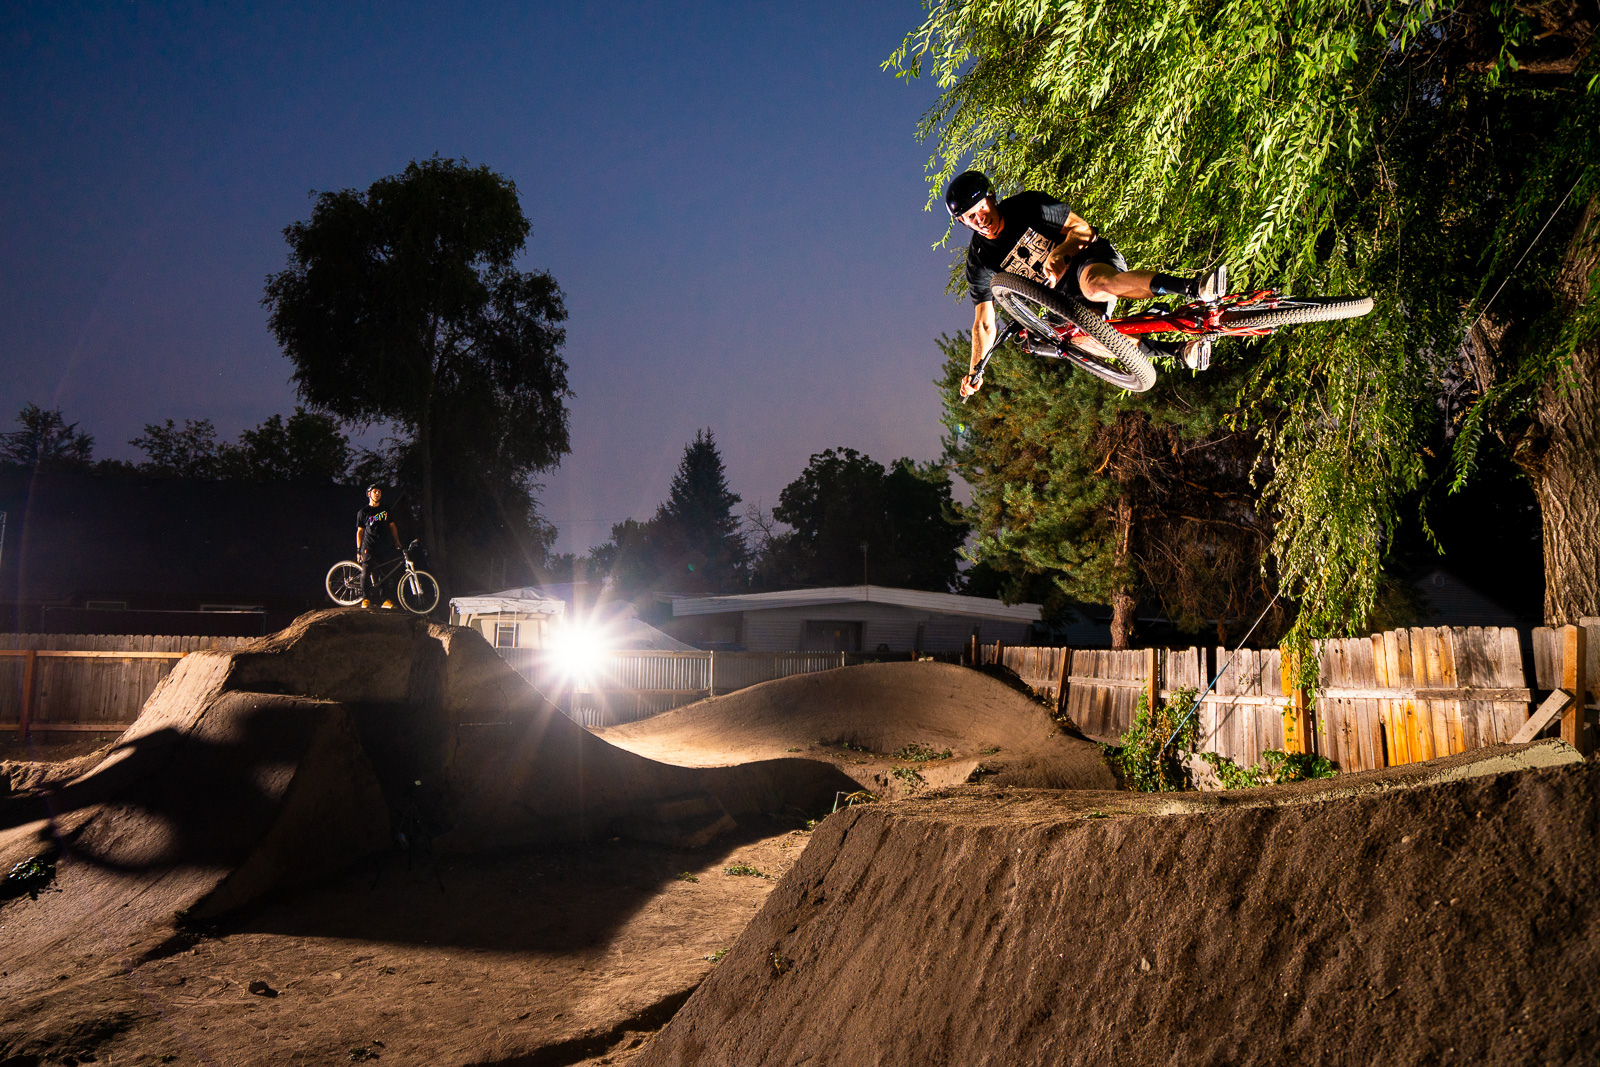 Jason Schroeder rides the dirt jumps in Austin Smiths back yard in Boise, Idaho